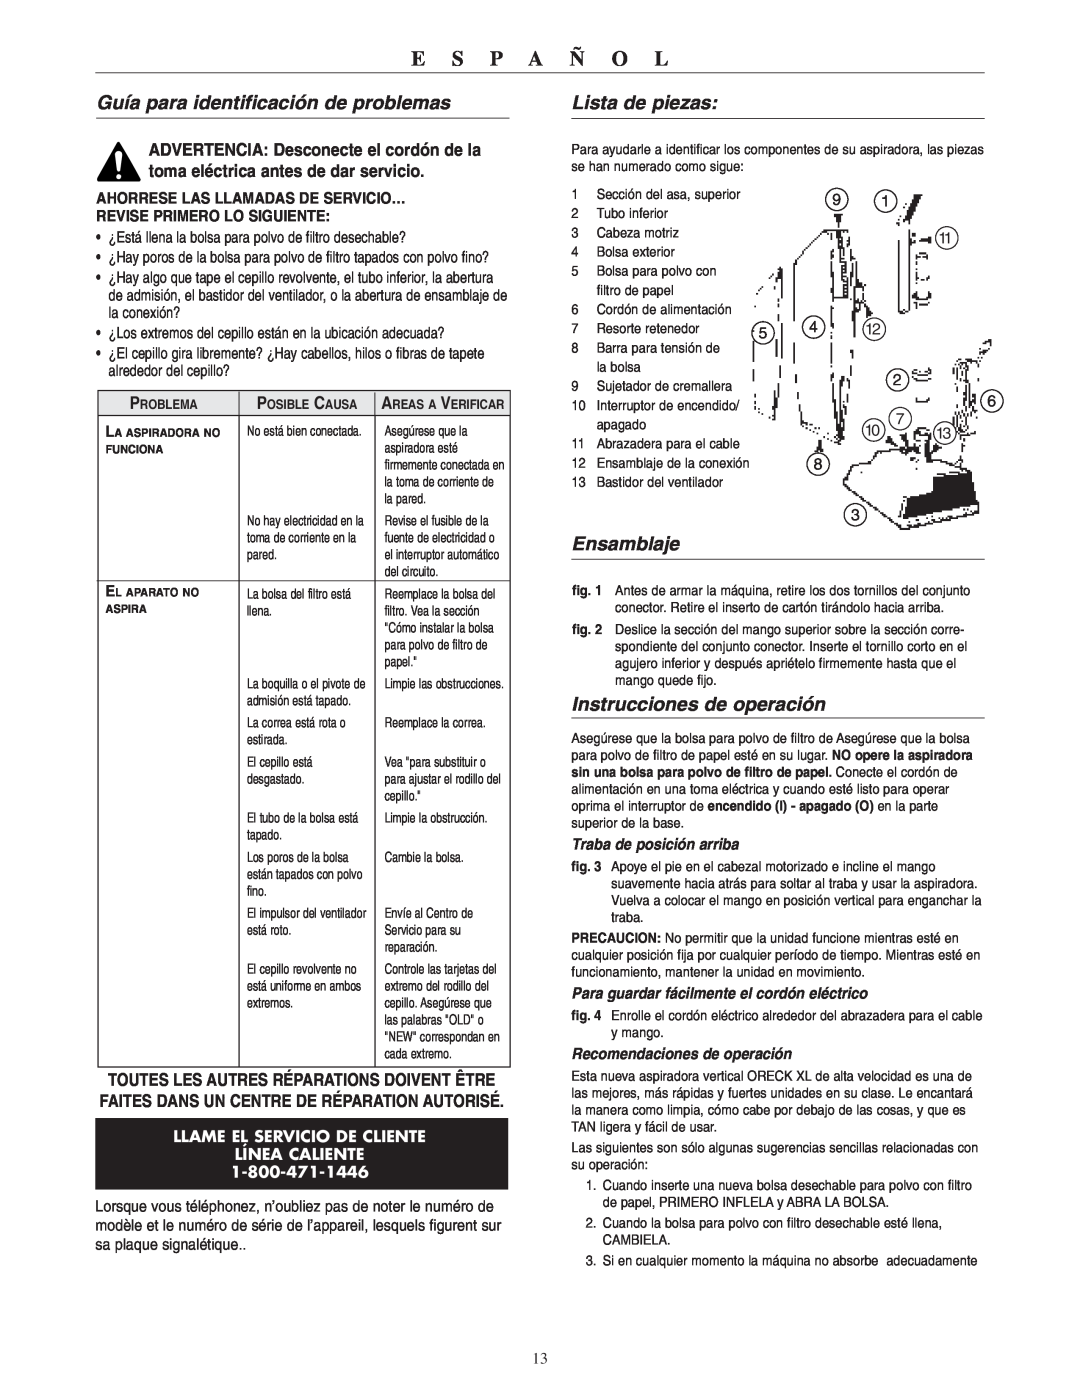 Oreck XL2310RS warranty Guía para identificación de problemas, Lista de piezas, Ensamblaje, Instrucciones de operación 